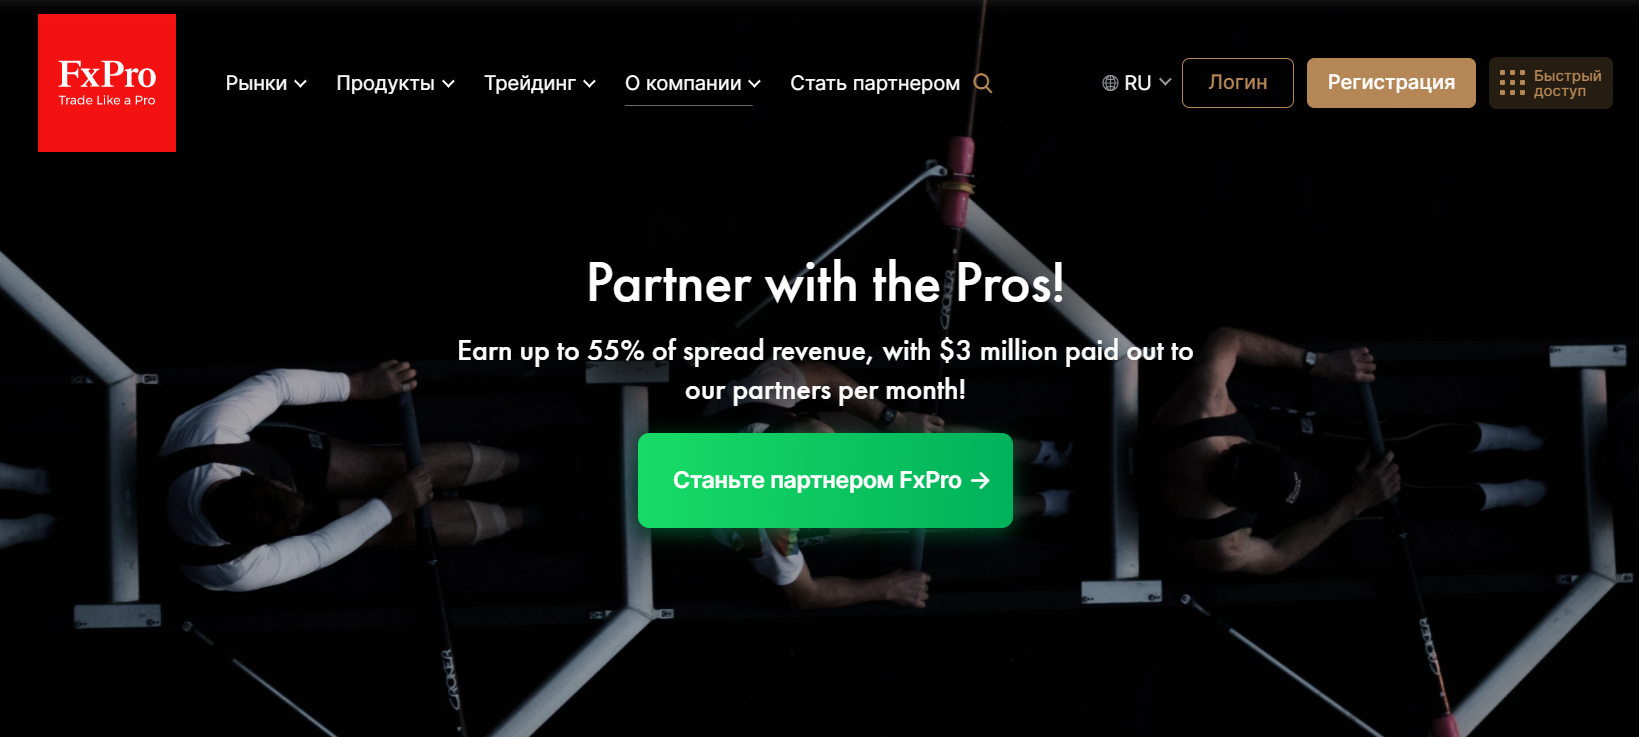 Партнерские программы FxPro